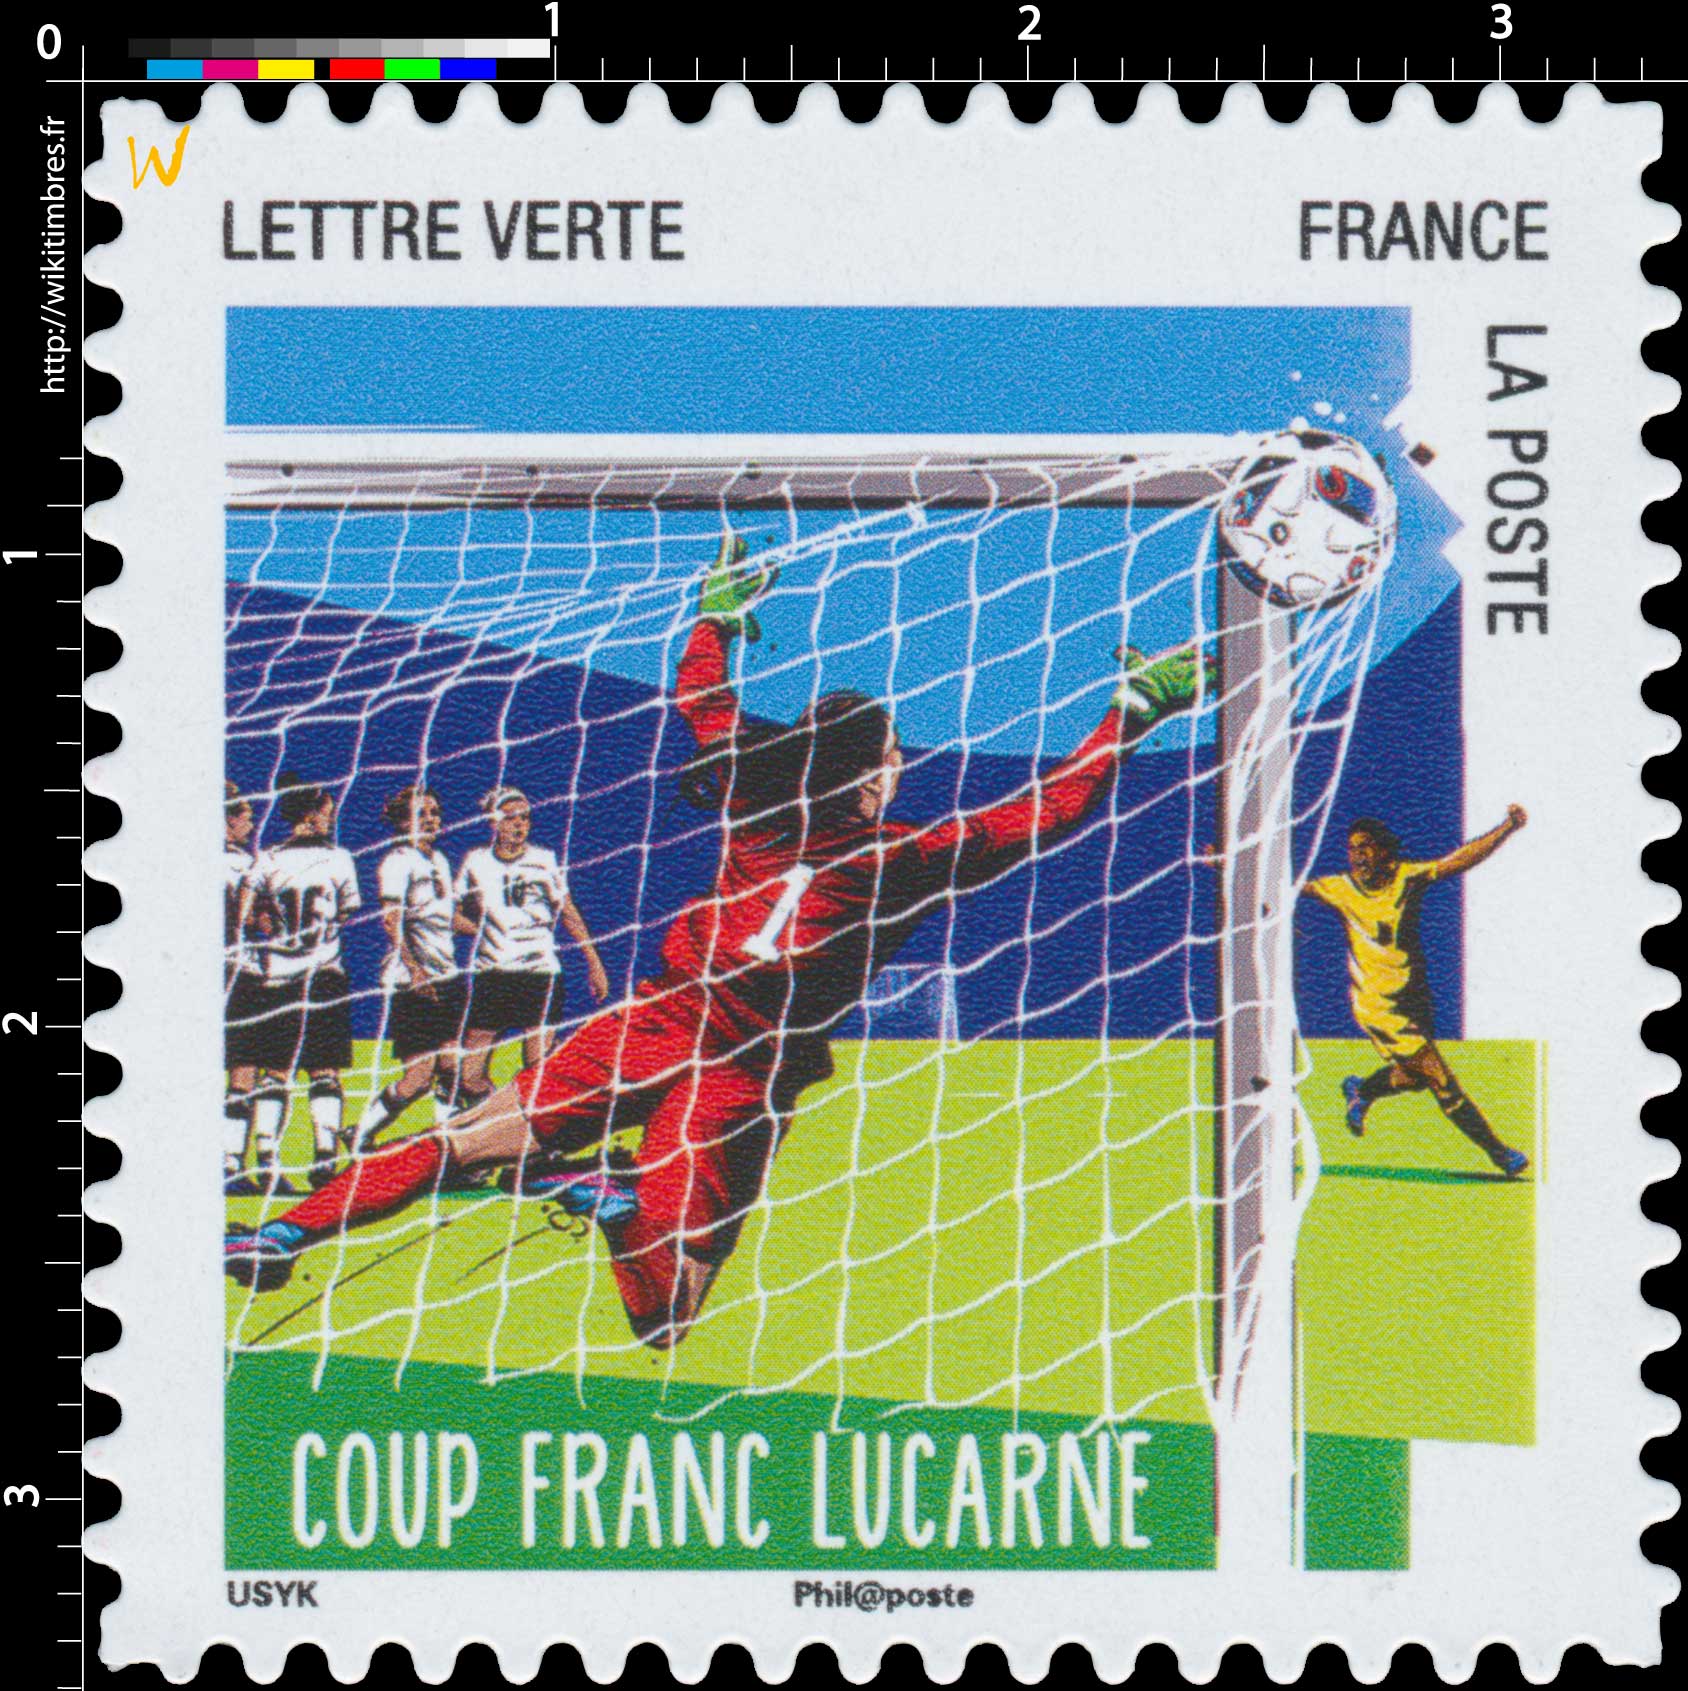 2016 Coup franc lucarne